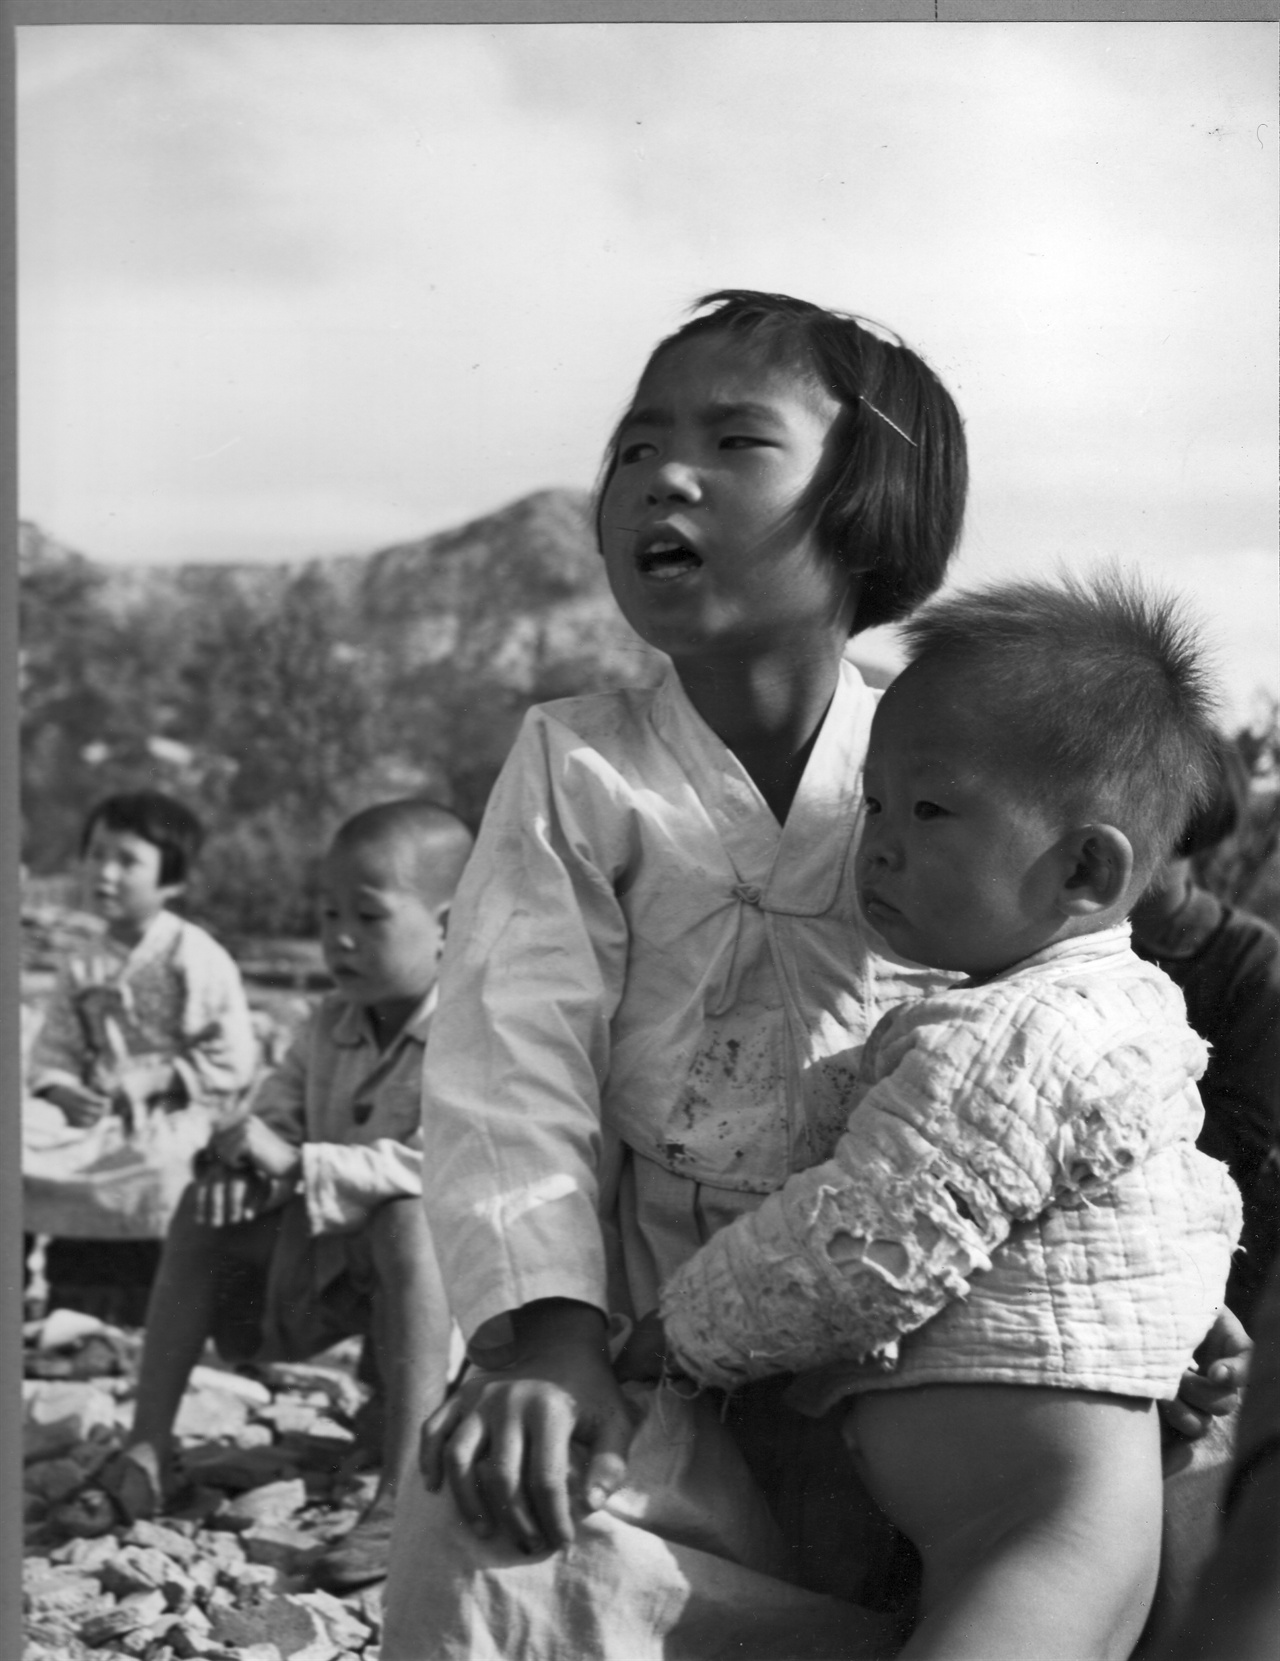 1950. 10. 서울 은평, 전란으로 학교 교실마저도 불타버렸다. 엄마가 일터로 가자 소녀는 하는 수 없이 동생을 데리고 학교로 가서 야외 교실에서 수업을 받고 있다. 